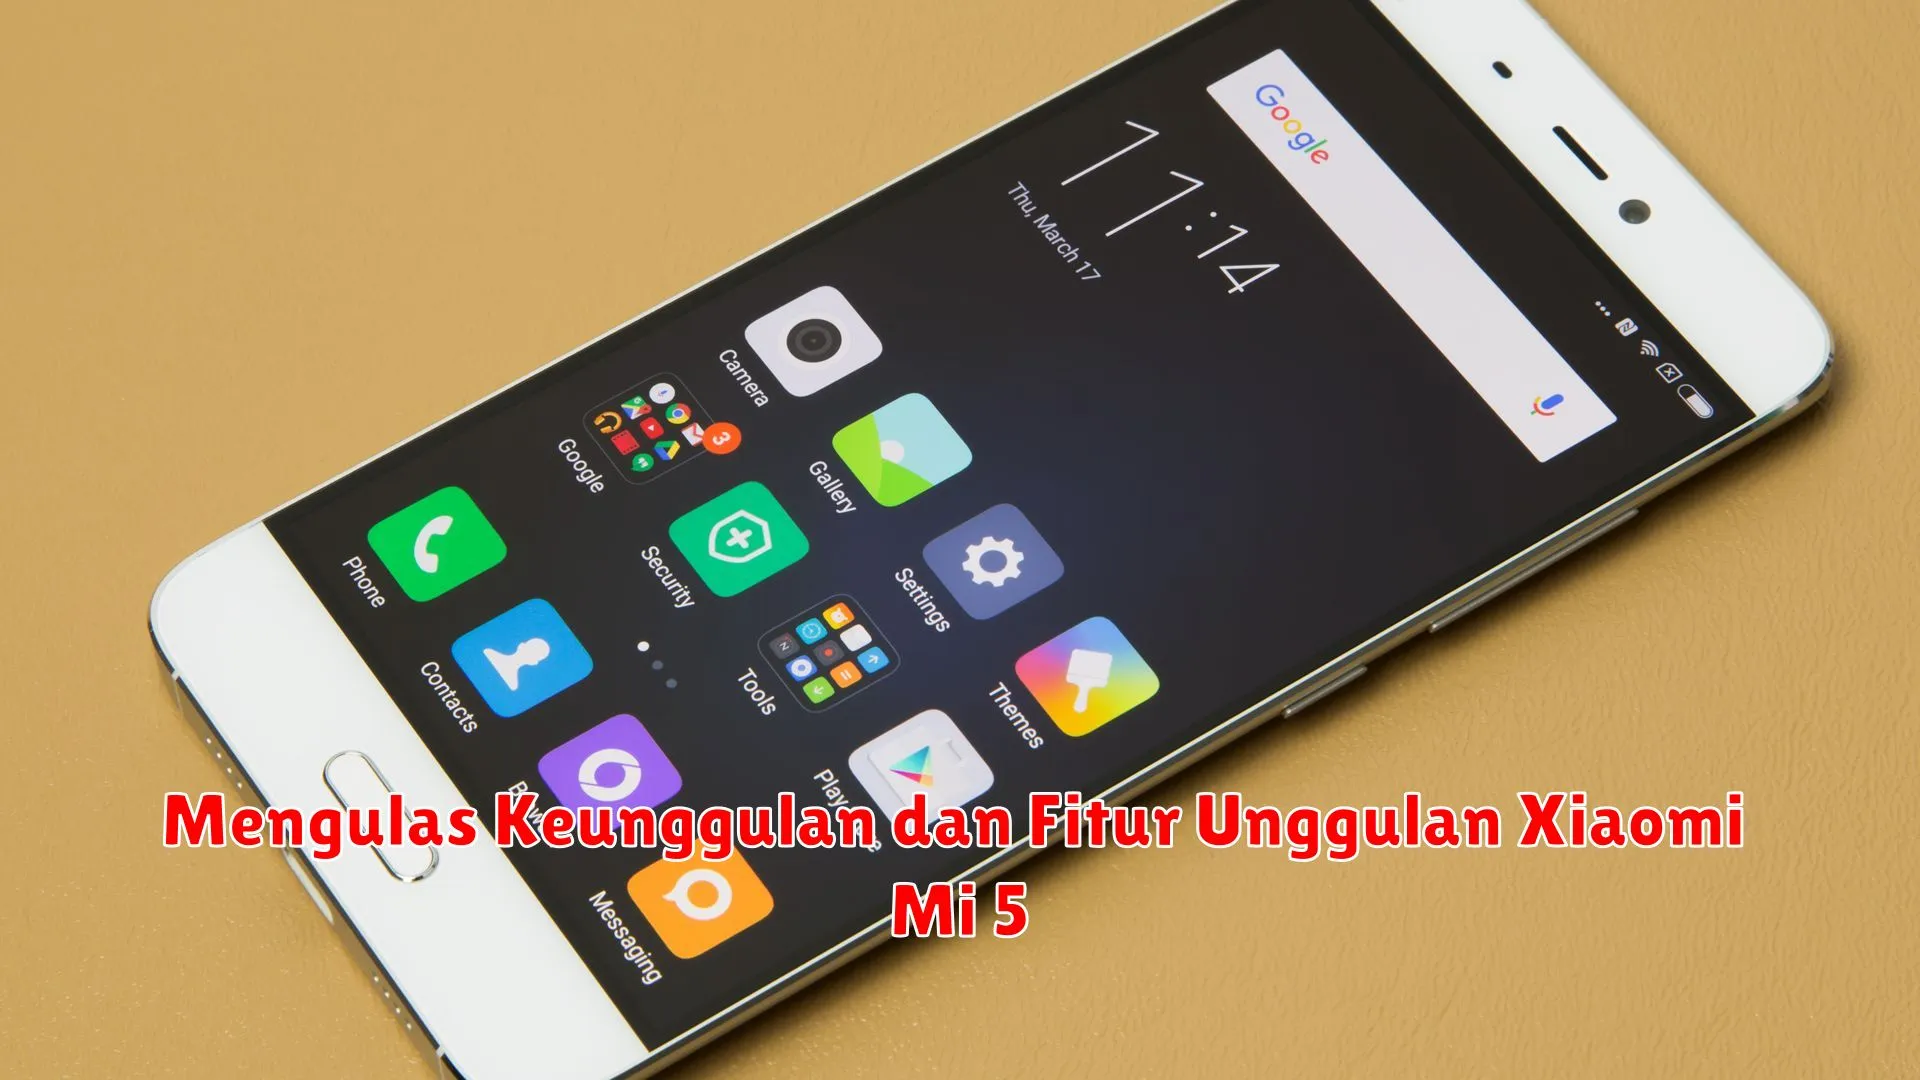 Mengulas Keunggulan dan Fitur Unggulan Xiaomi Mi 5